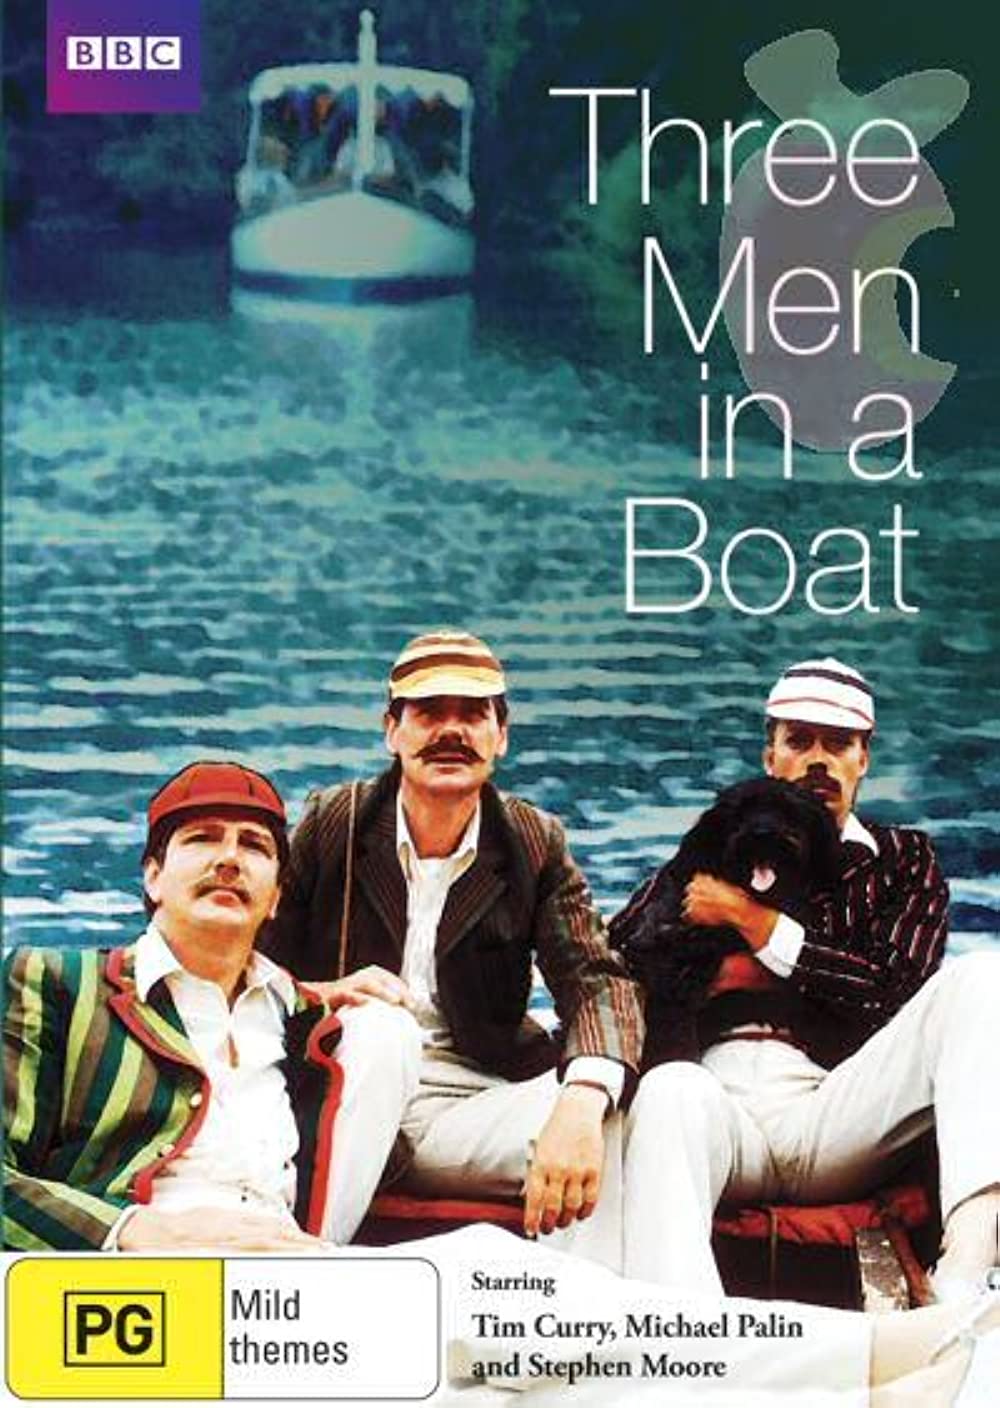 Filmbeschreibung zu Drei Mann in einem Boot